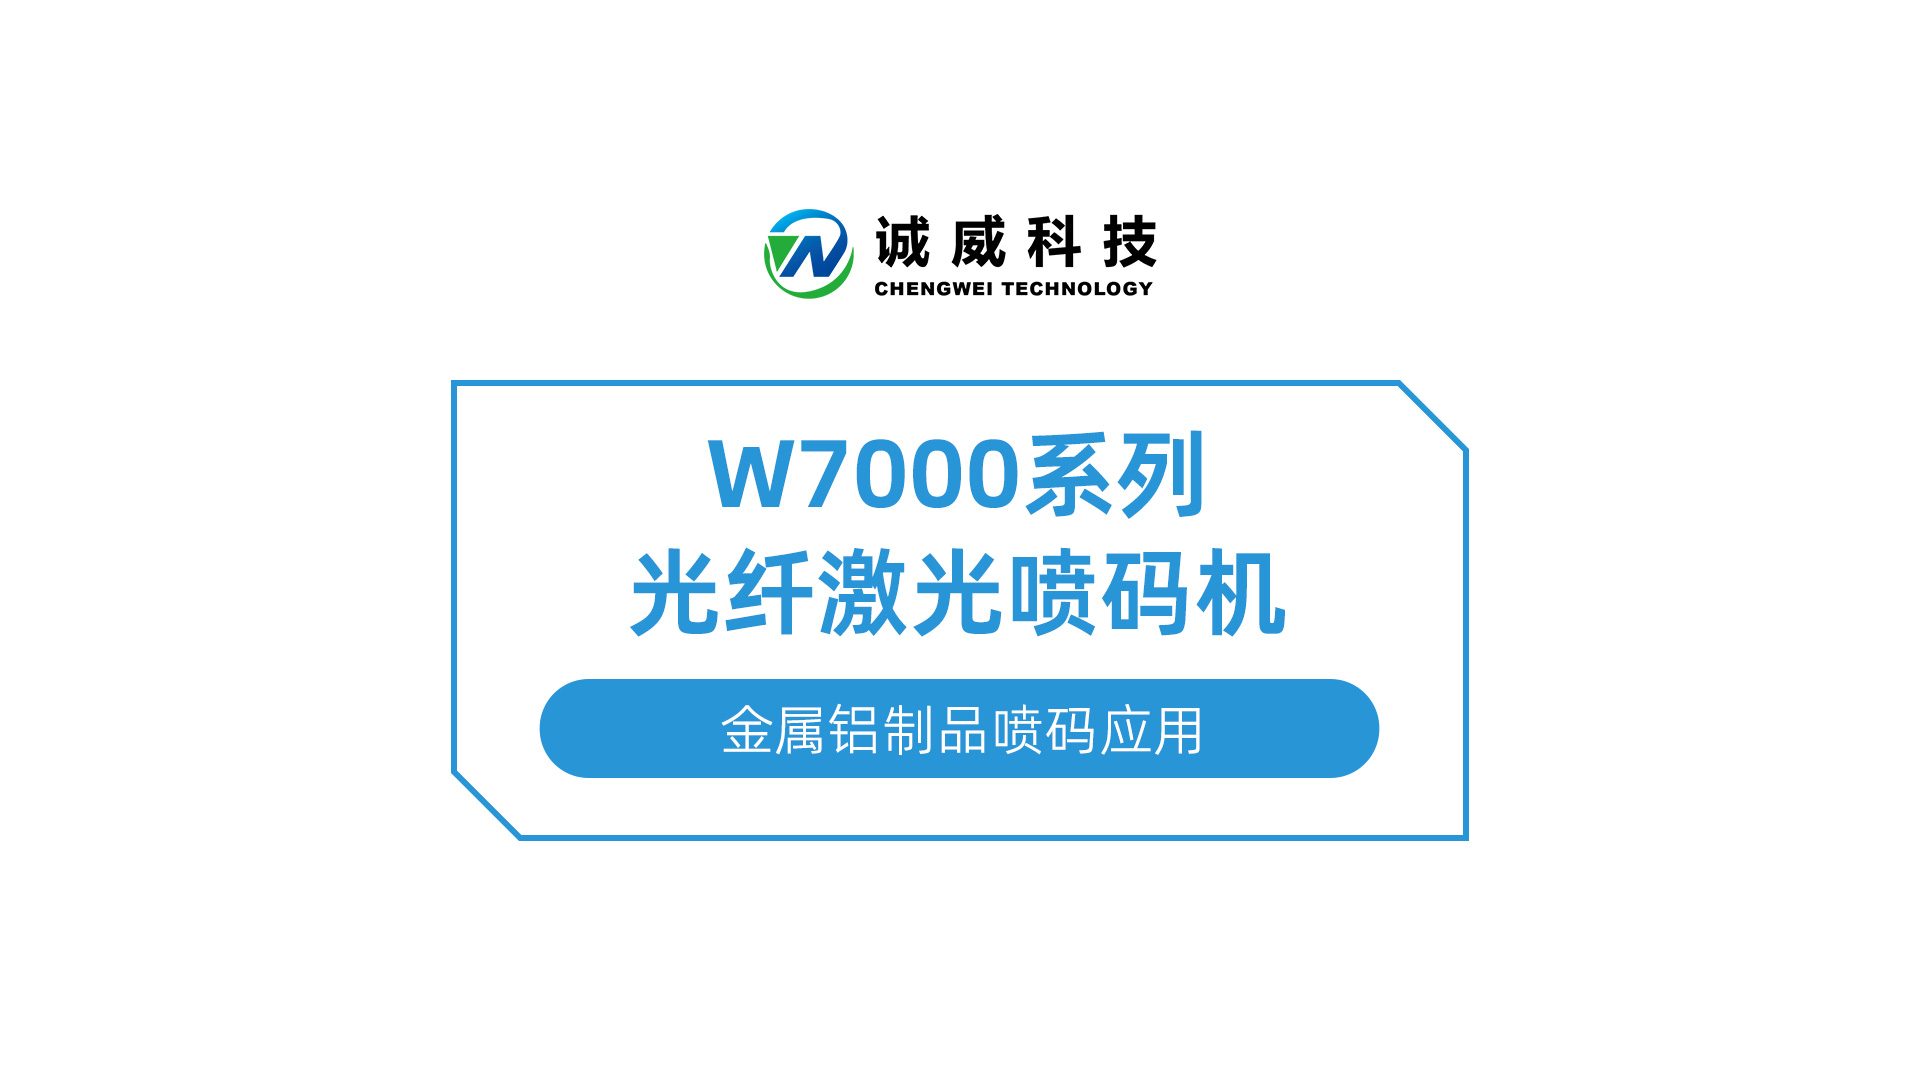 W7000系列光纤激光喷码机-金属铝制品喷码应用.jpg